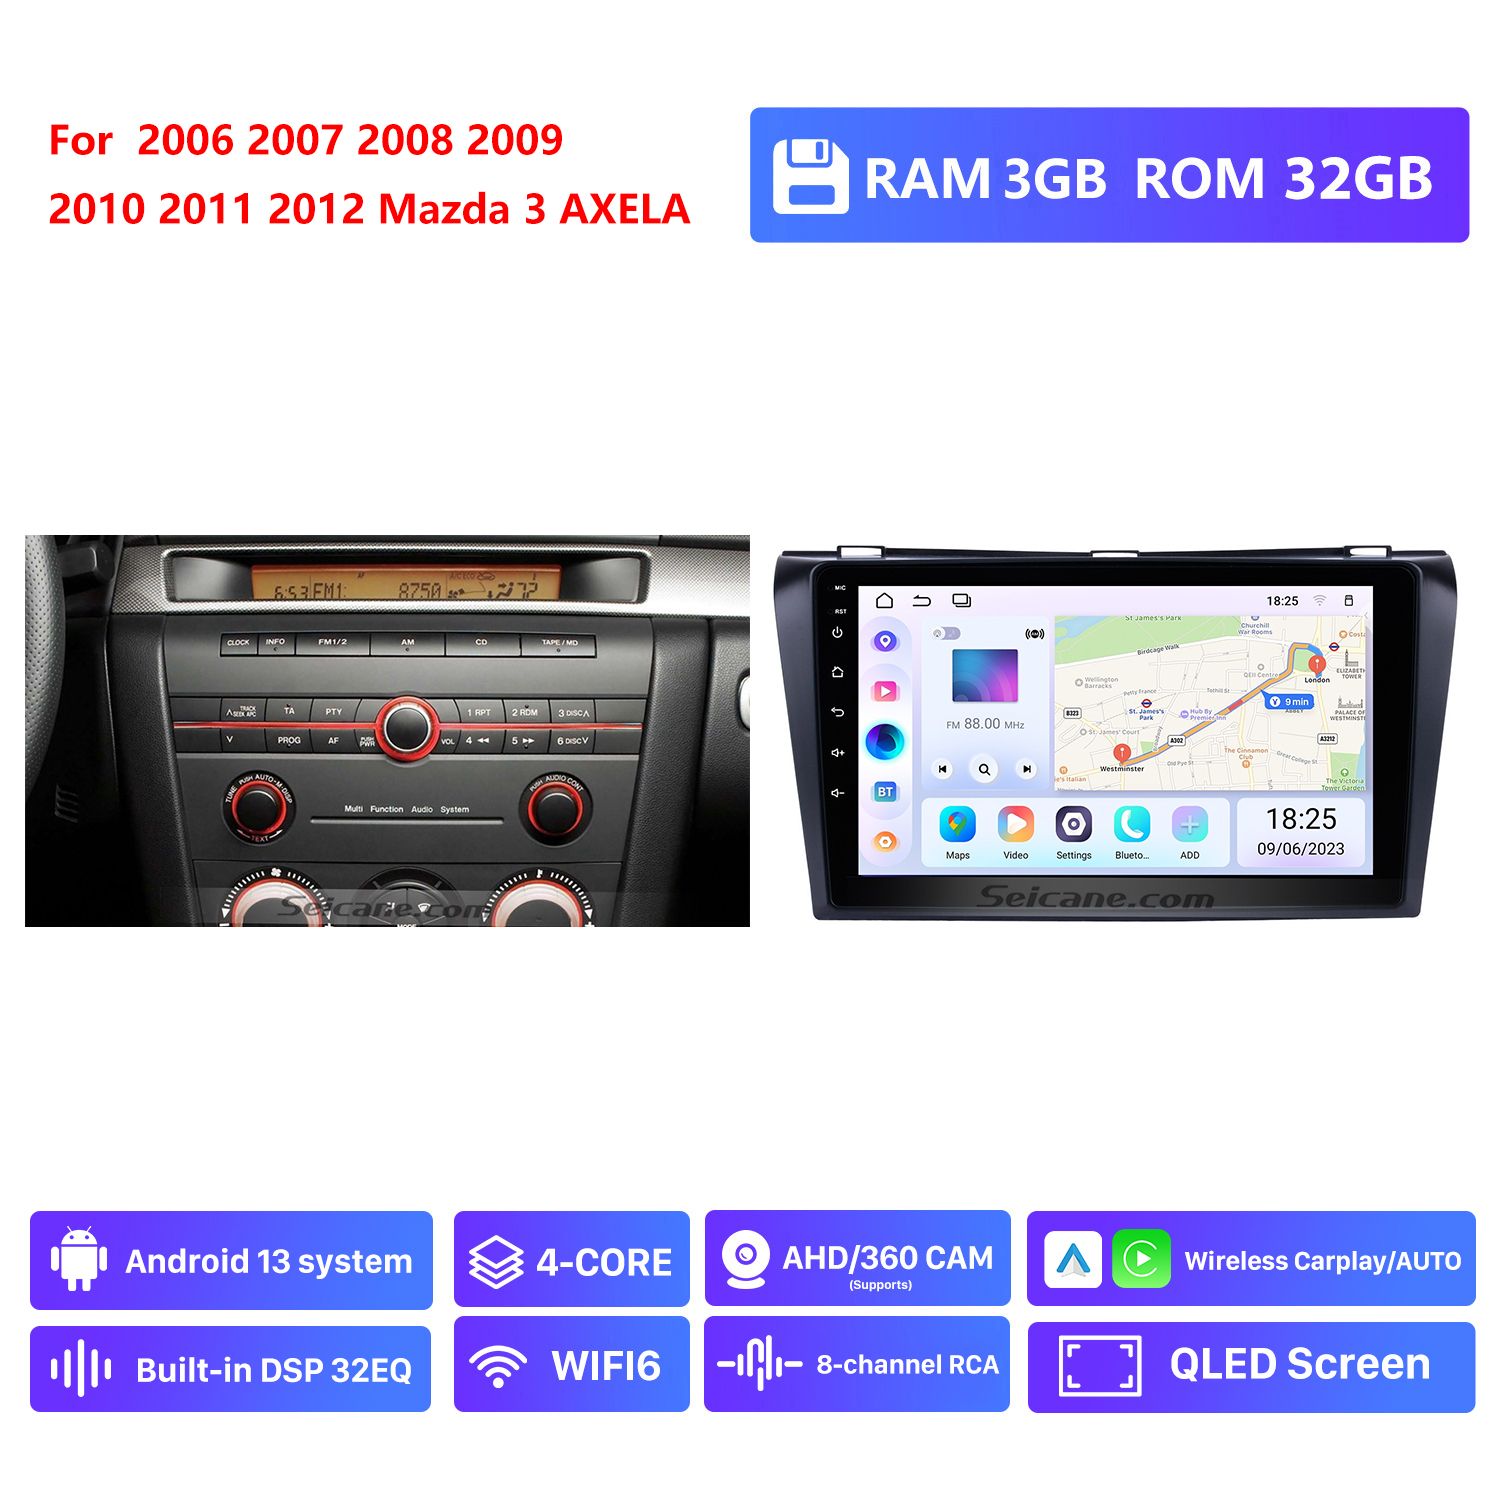 RAM 3G,ROM 32G